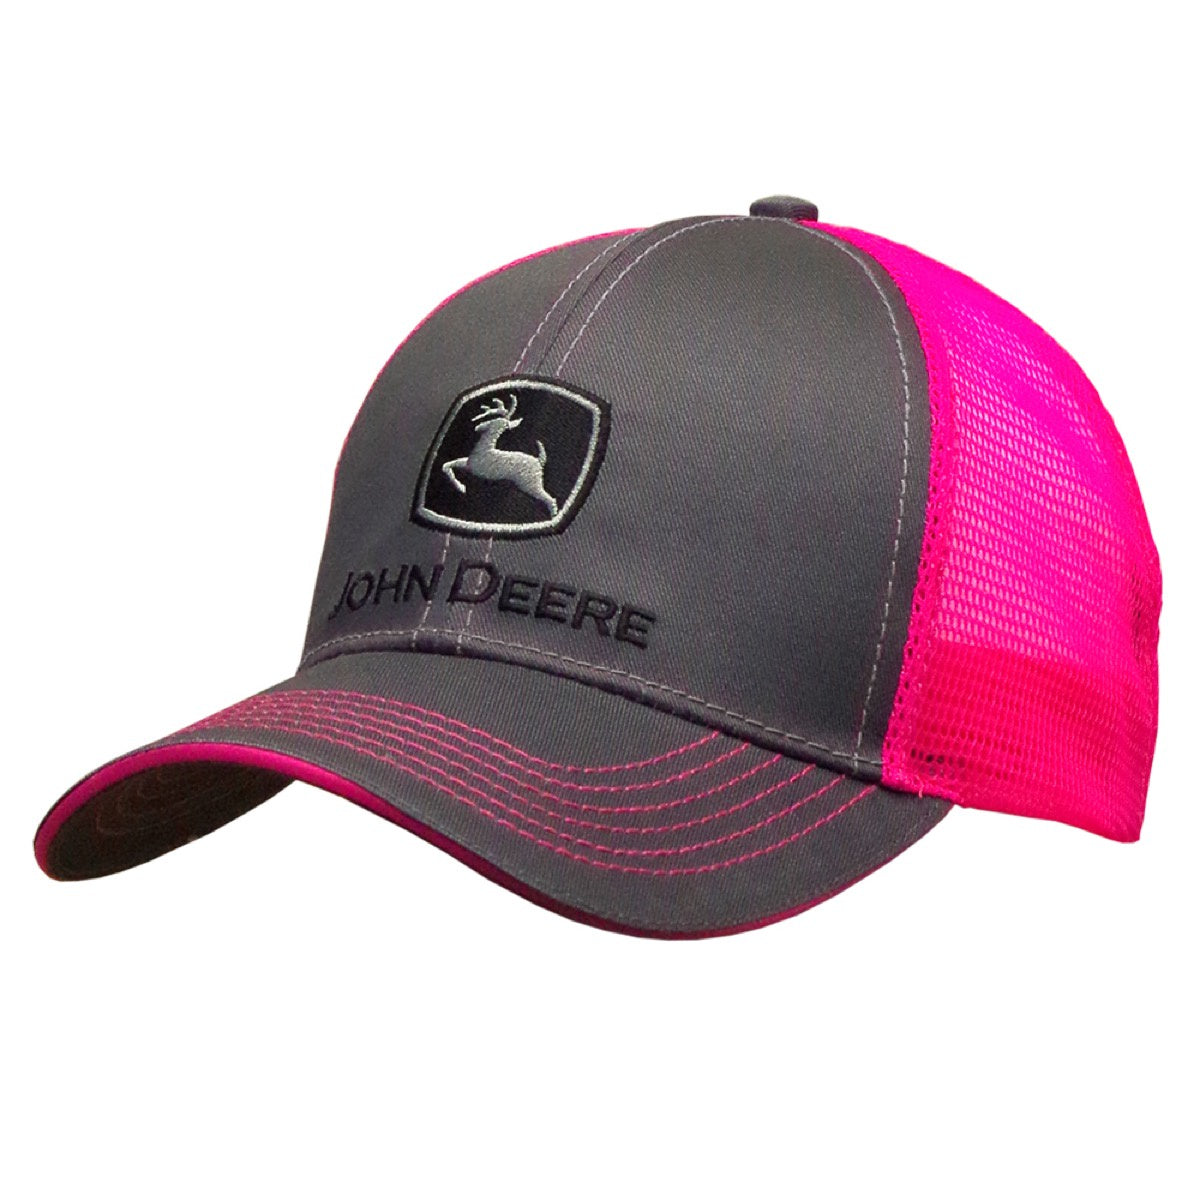 John Deere - JD Neon Cap Charcoal/Pink